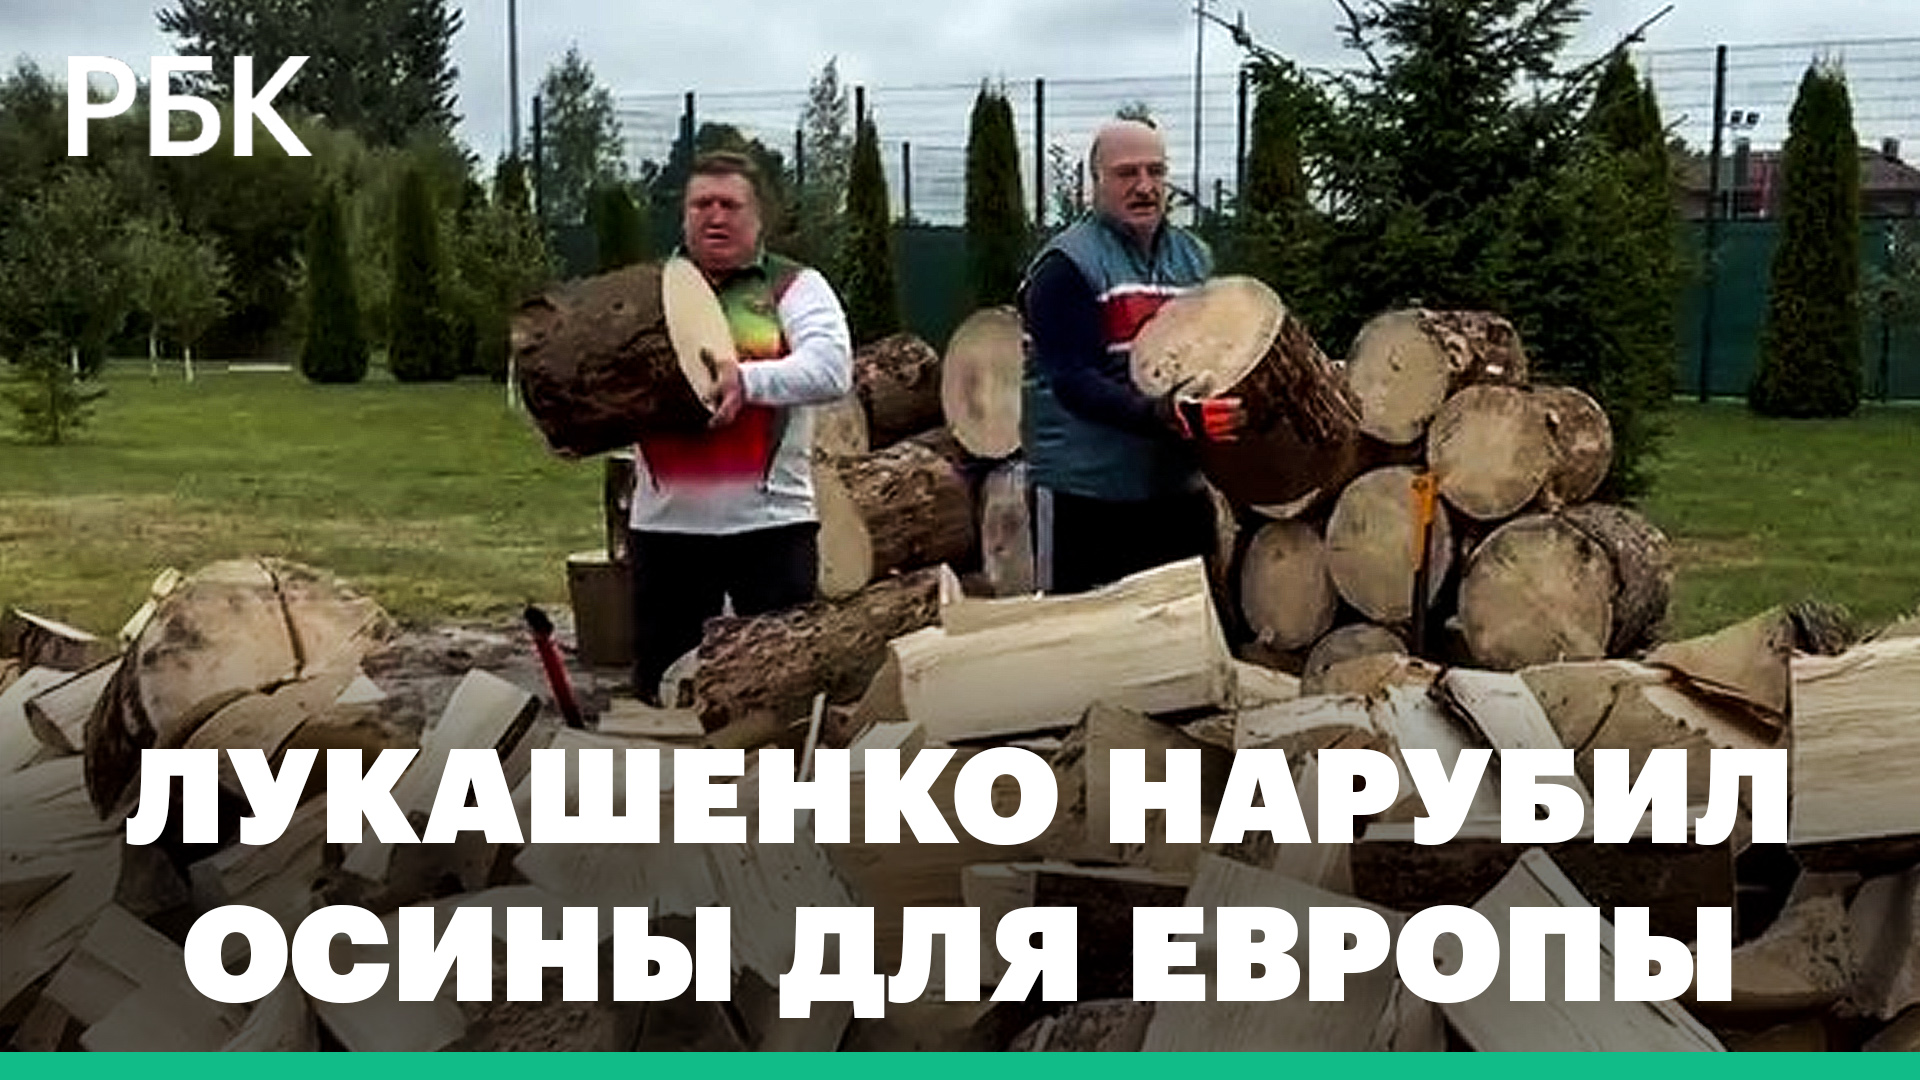 «Главное, чтобы Дуда и Моравецкий не замерзли», — Лукашенко нарубил для Европы дров на зиму